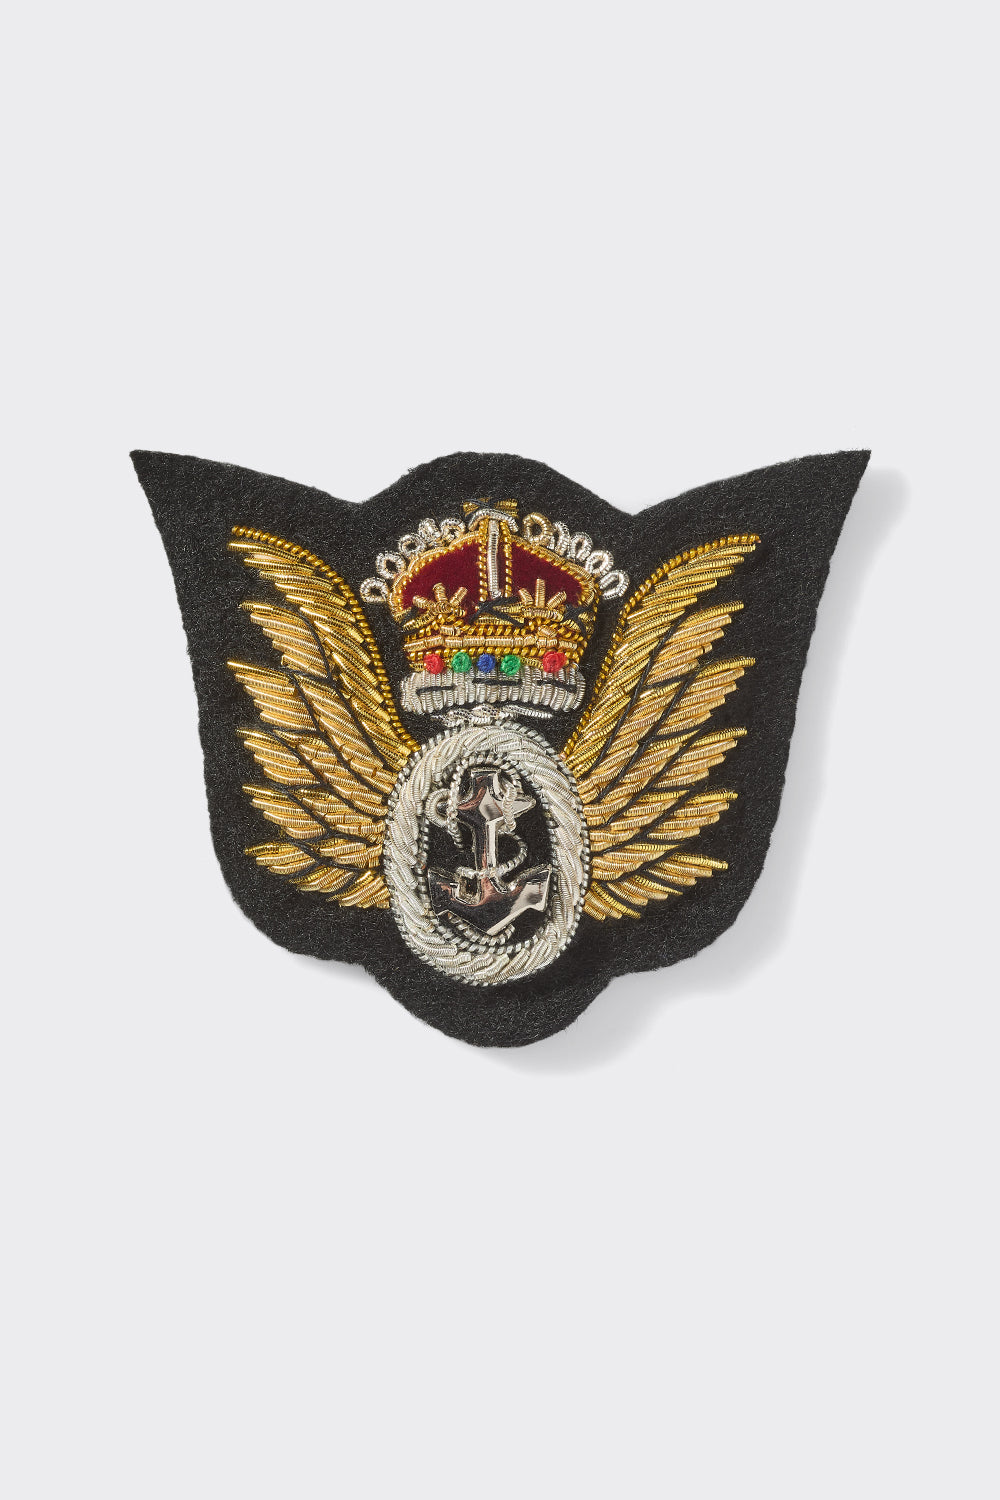 Royal Navy Observers Wings Badge